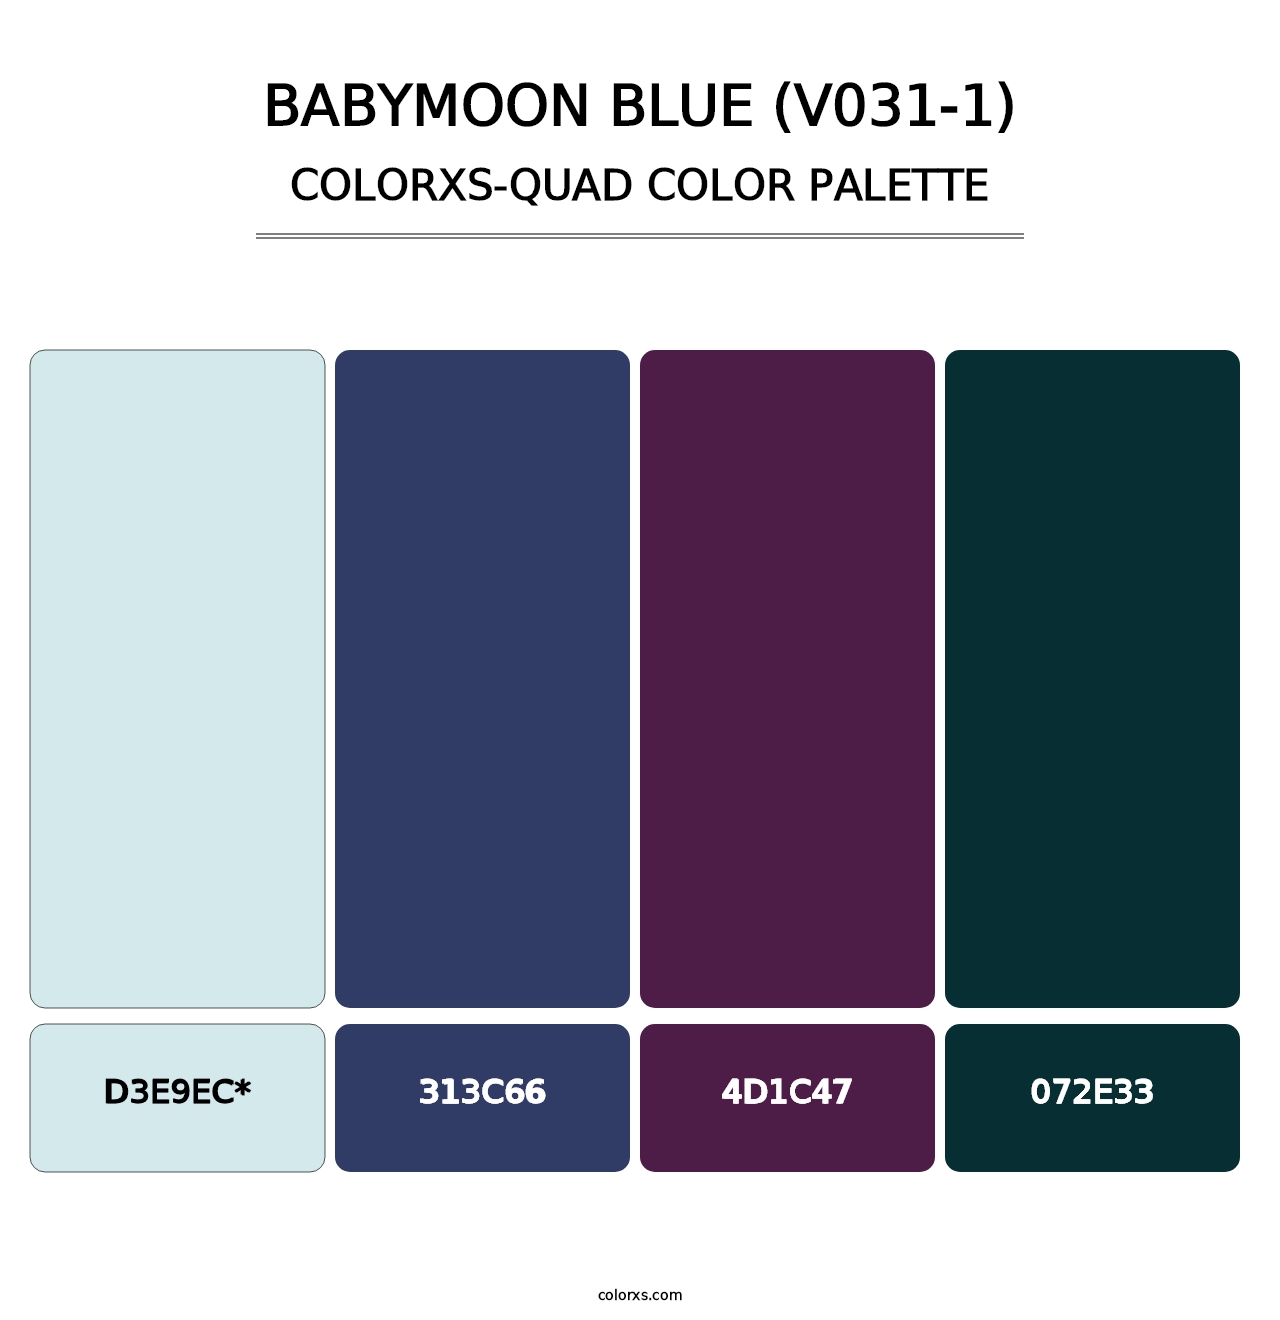 Babymoon Blue (V031-1) - Colorxs Quad Palette